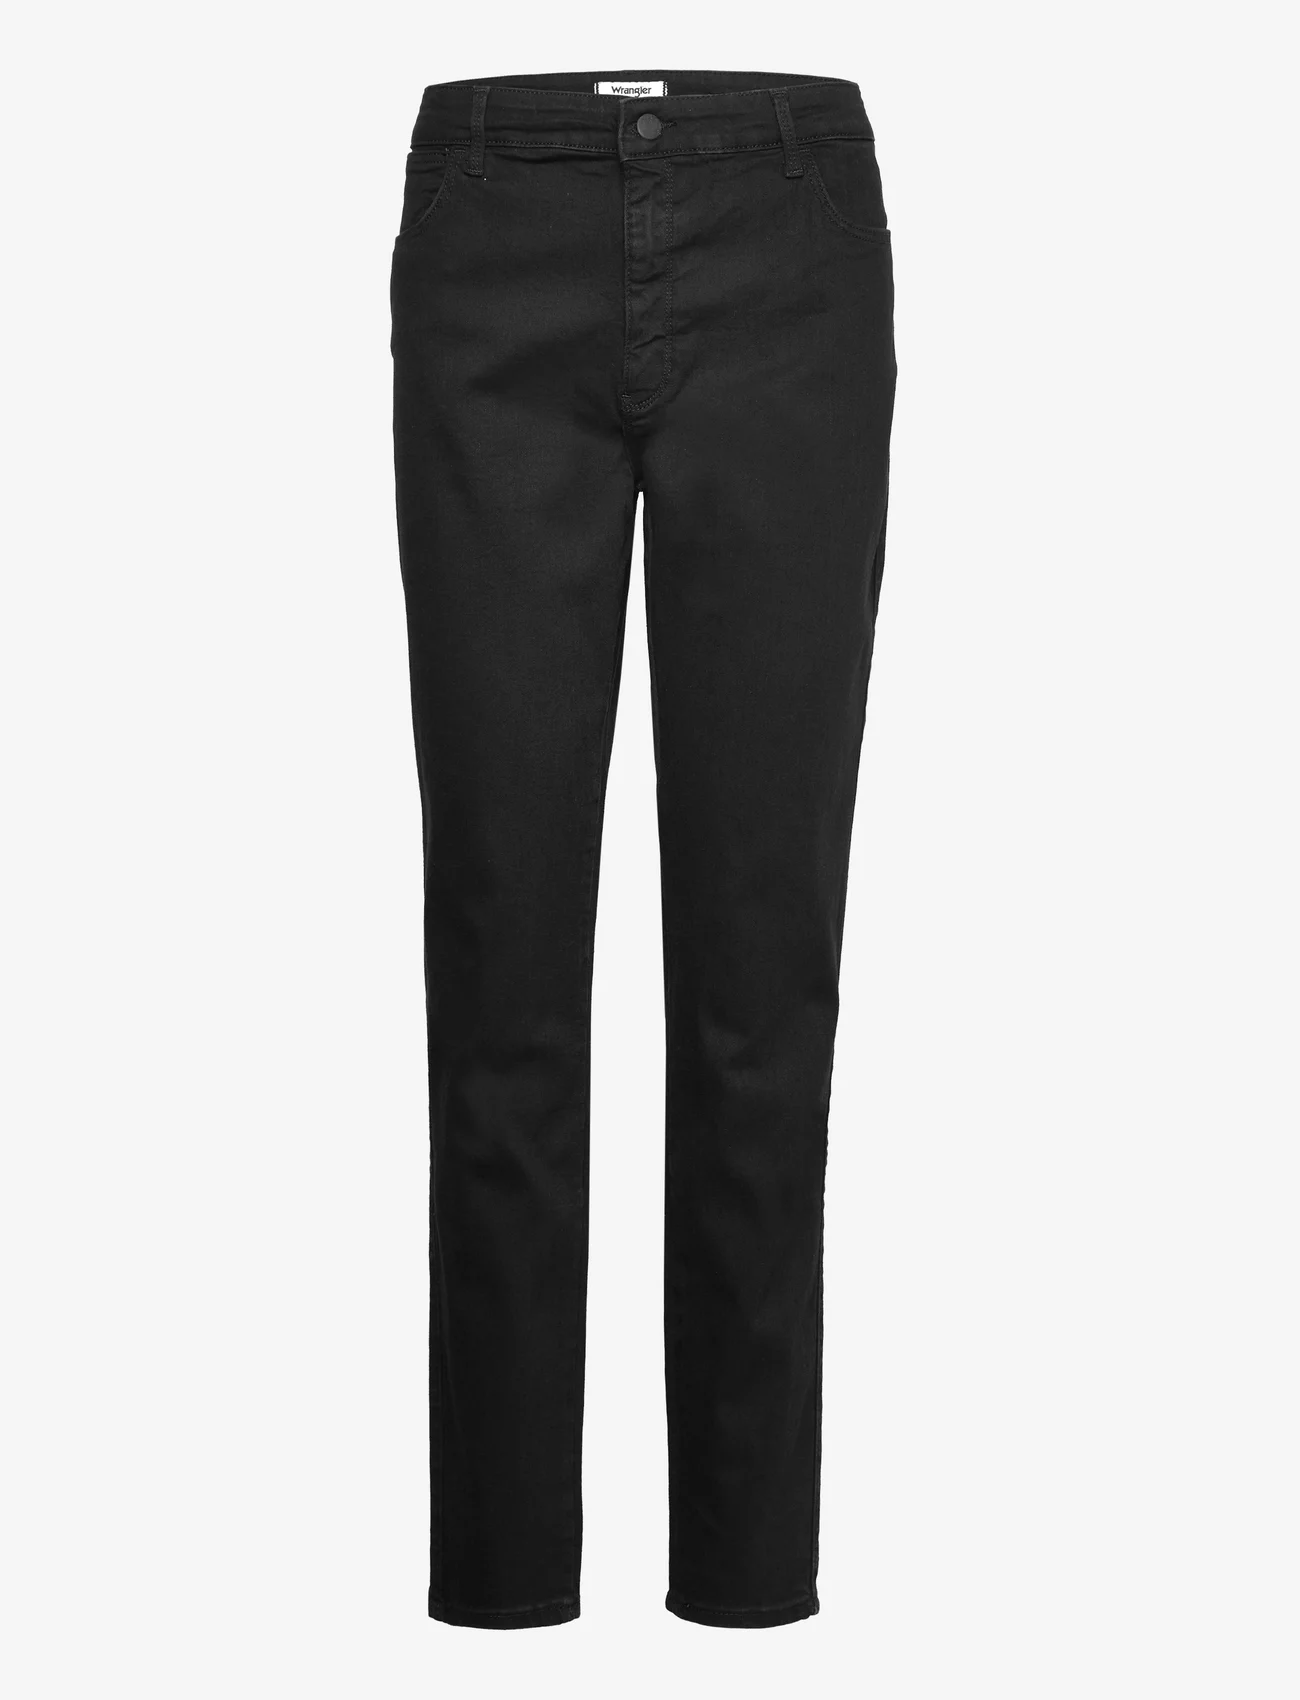 Wrangler - SKINNY - slim fit trousers - perfect black - 0